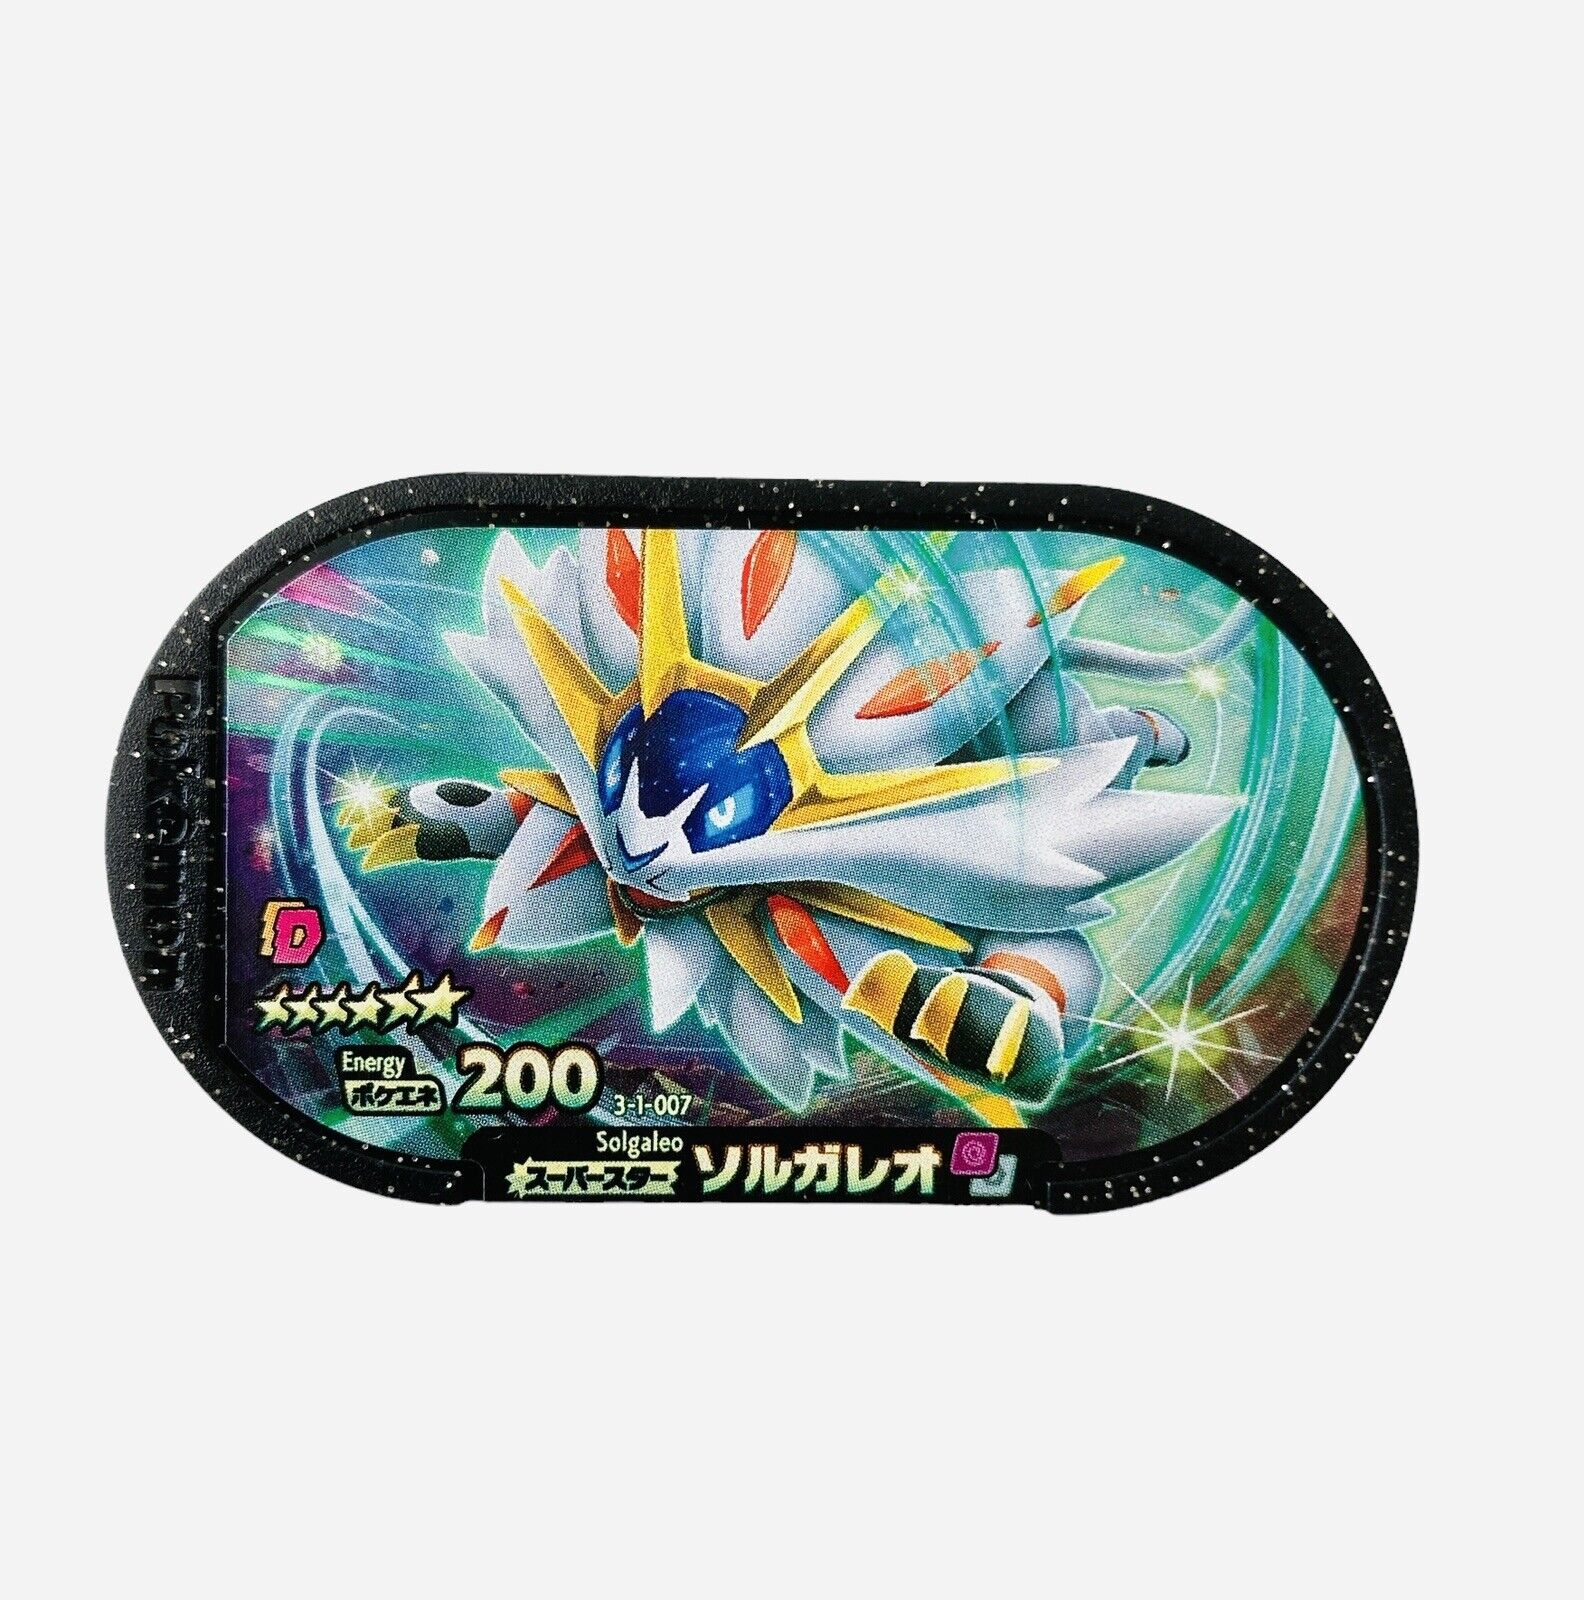 Solgaleo Pokemon Mezastar 3-1-007 Energy 200 From Japan 